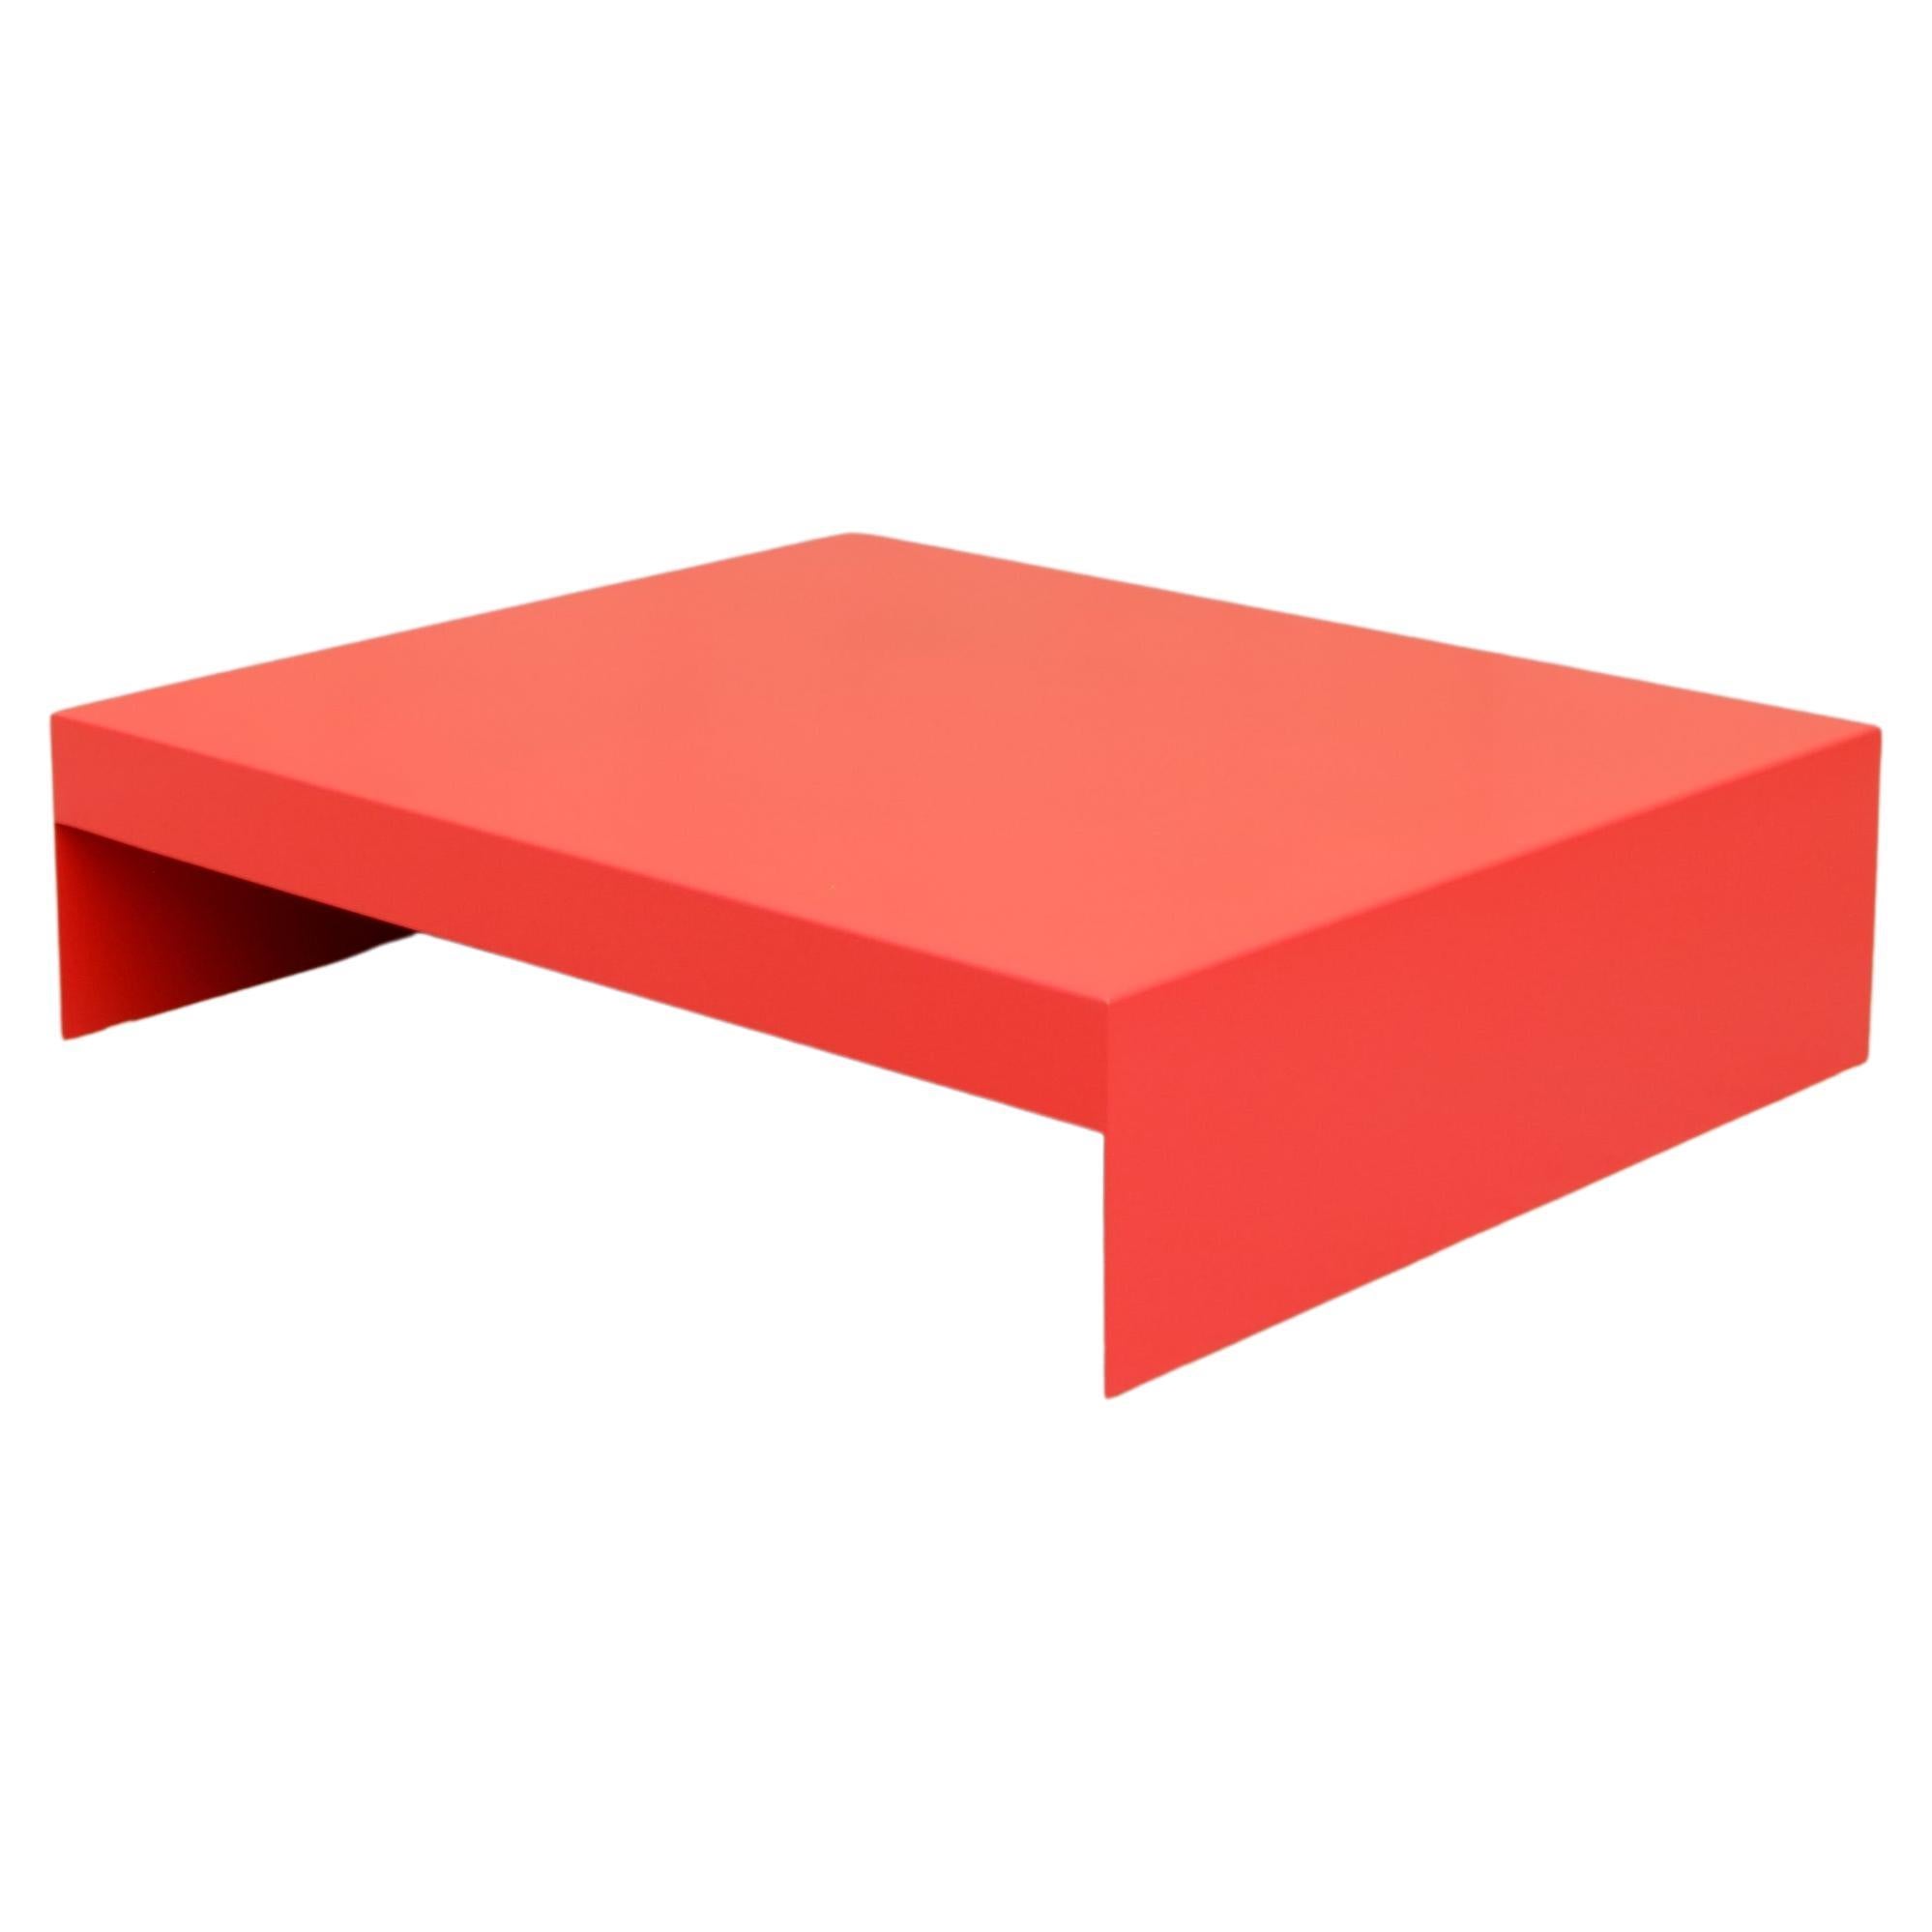 Grande table basse rectangulaire rouge de forme simple en aluminium, personnalisable